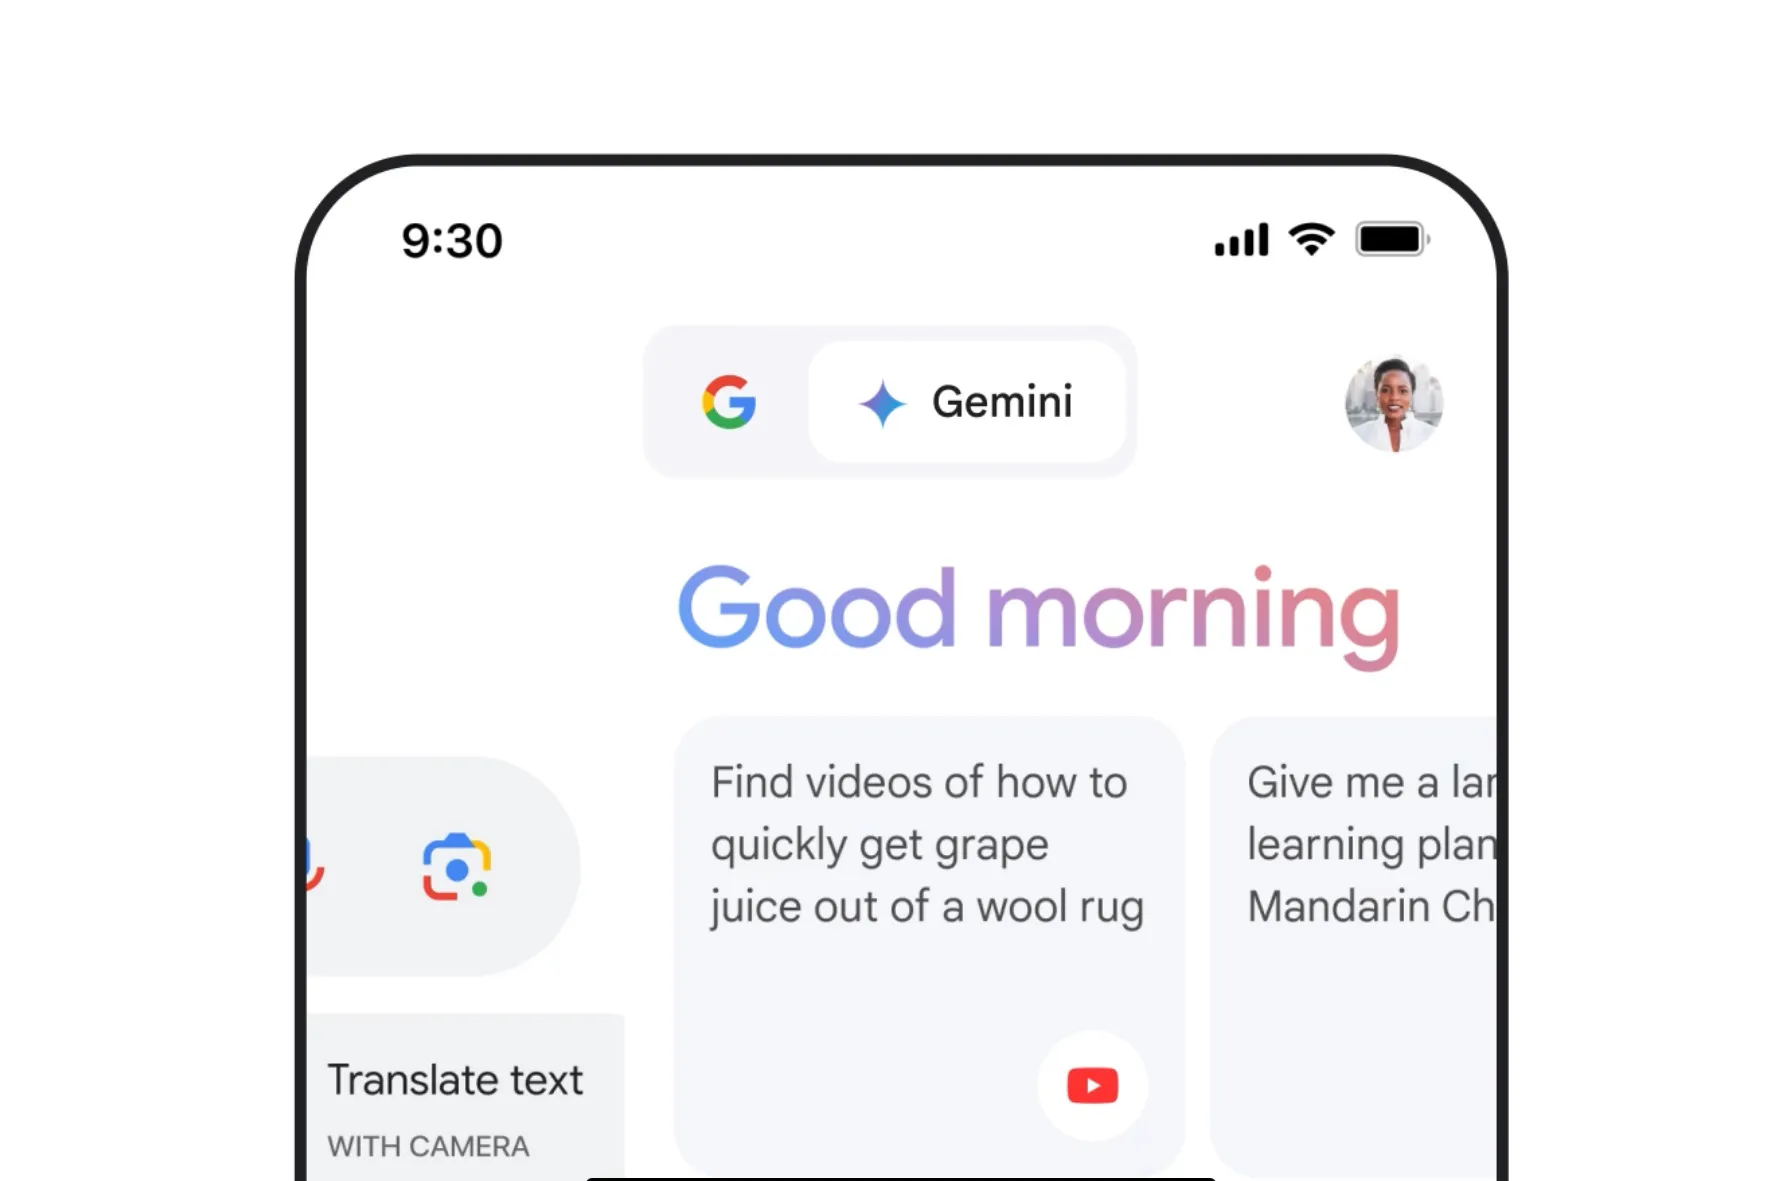 Приложение Google Gemini в действии на iOS.